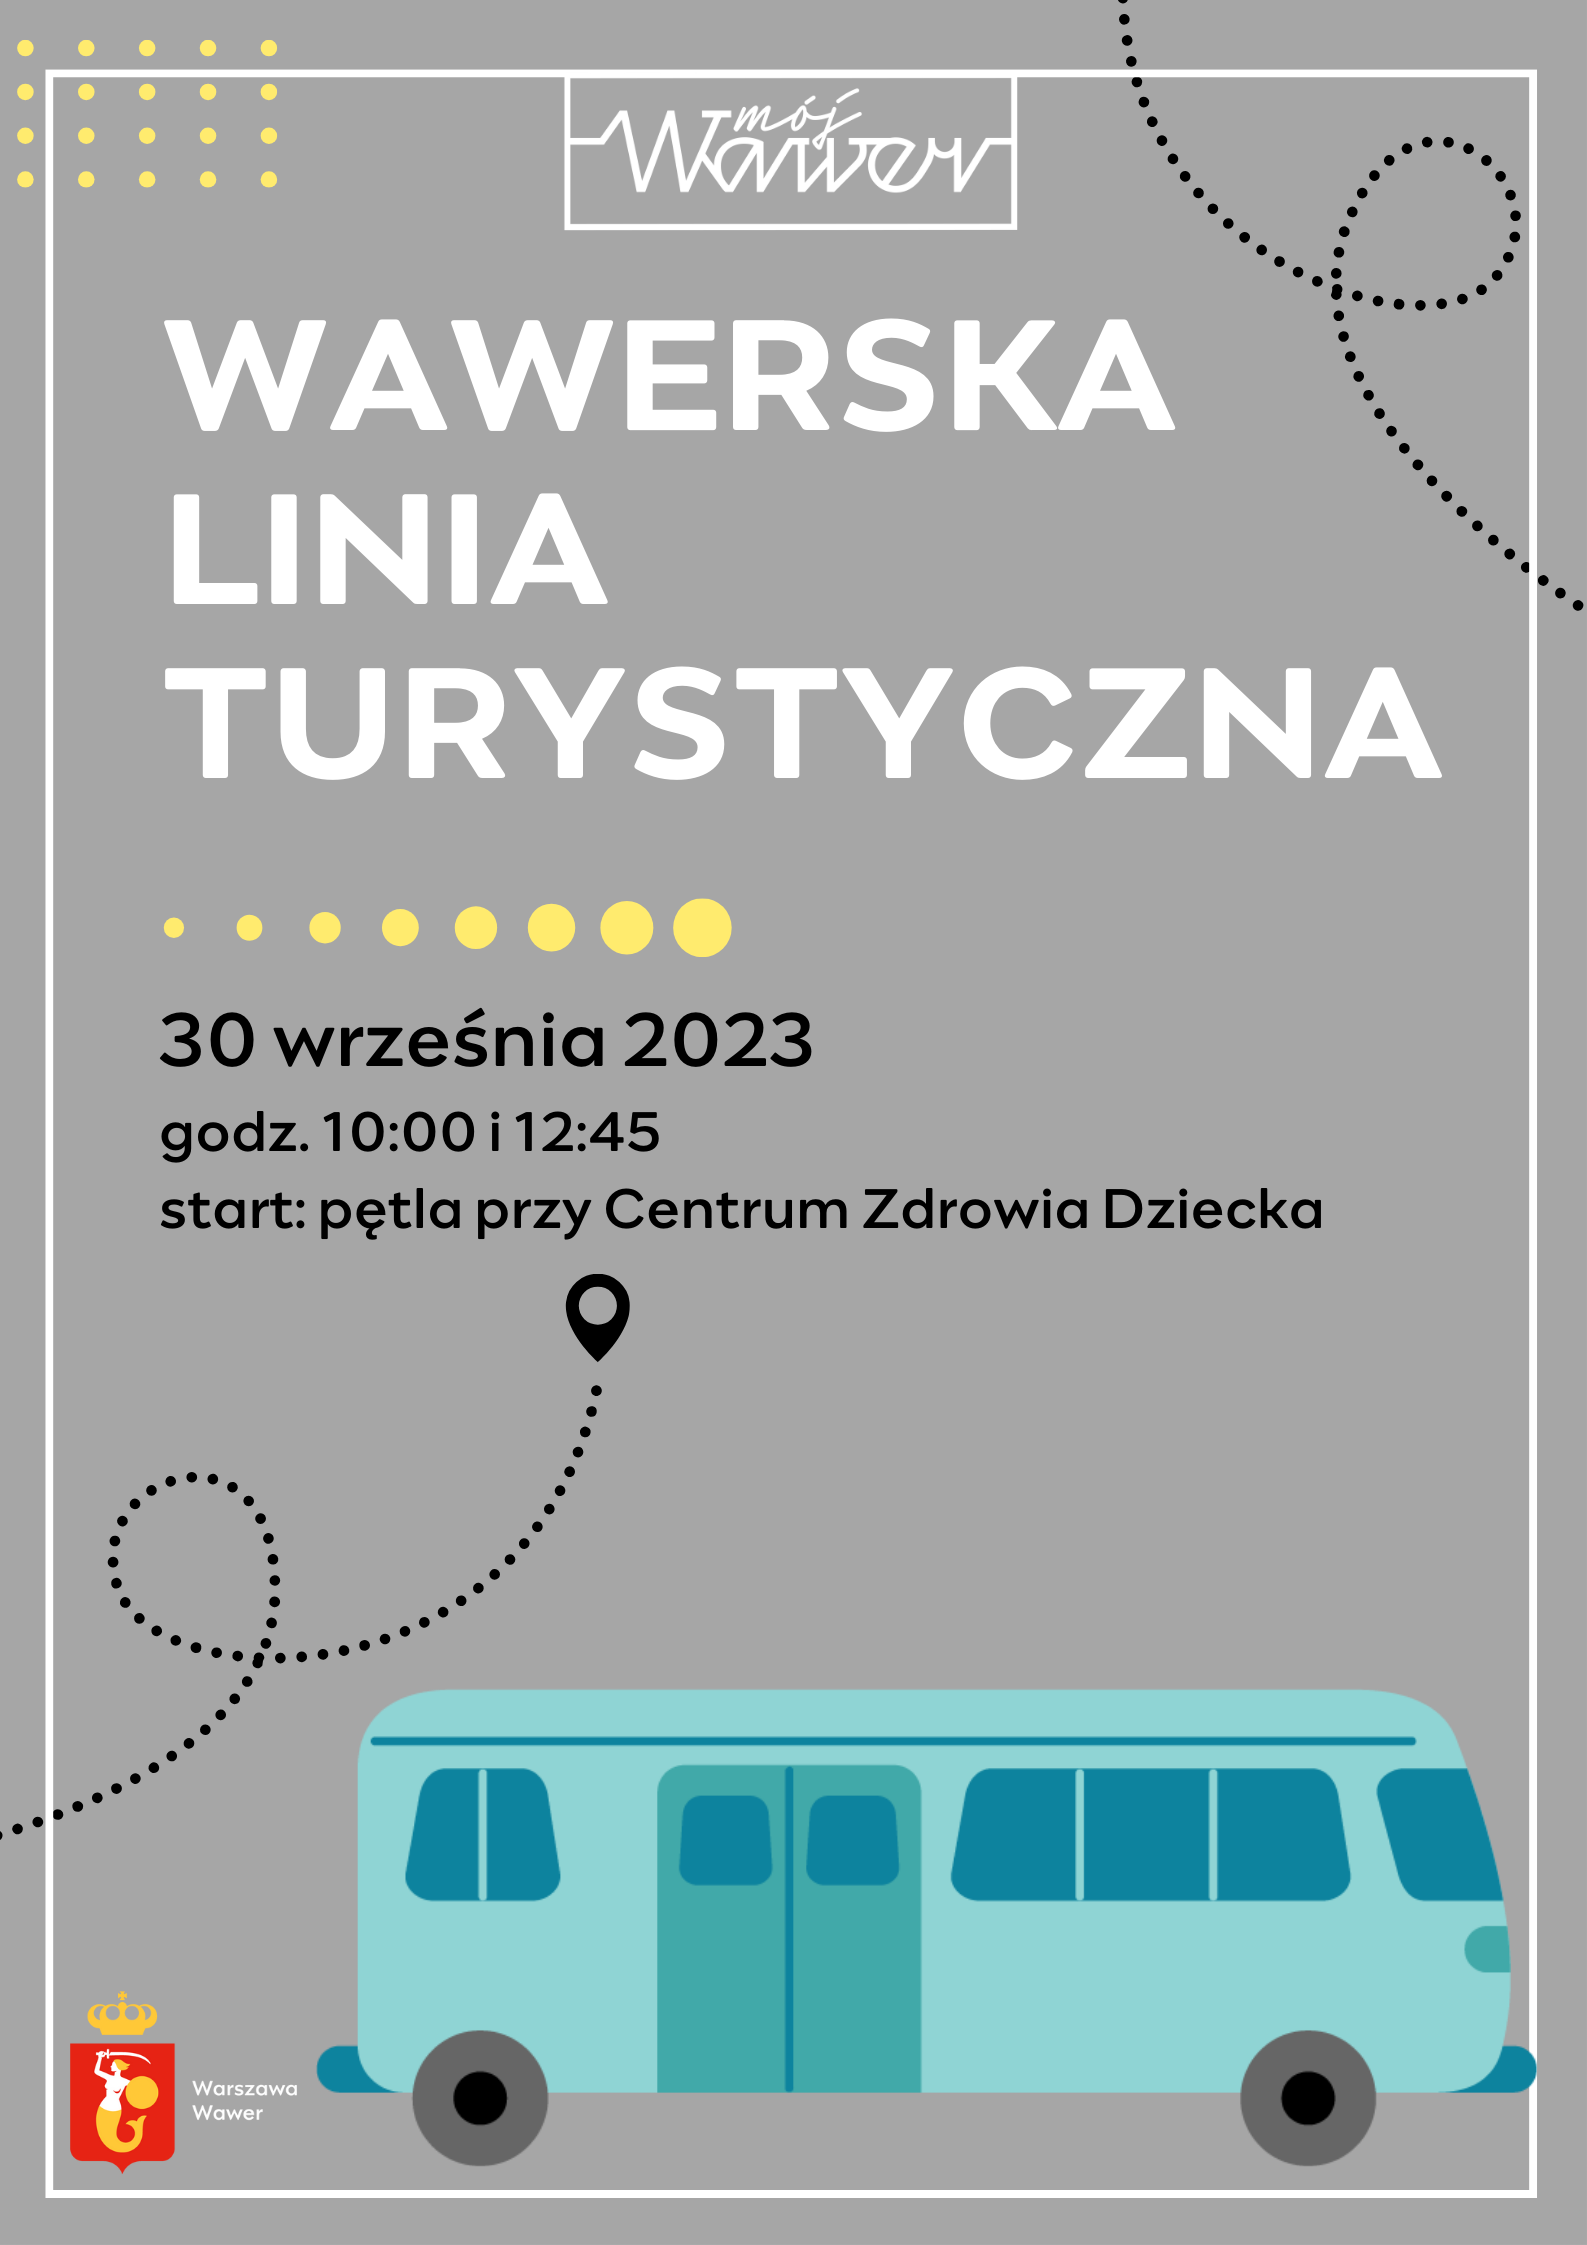 turkusowy autobus i zaproszenie na wawerską linię turystyczną